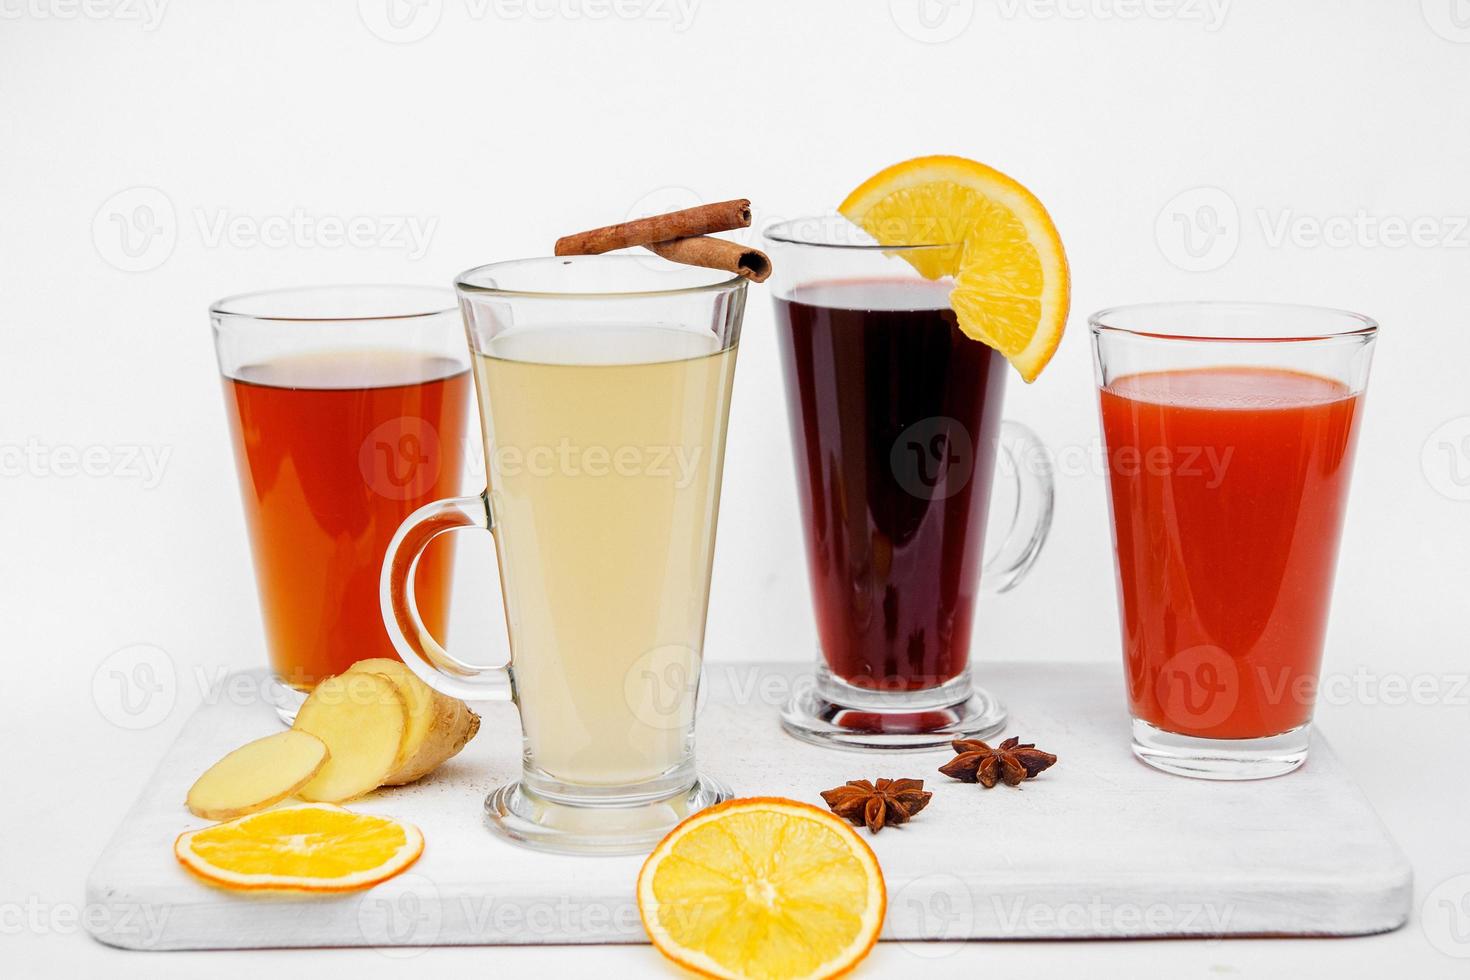 hete thee in glazen bekers met citroengember op een witte achtergrond foto